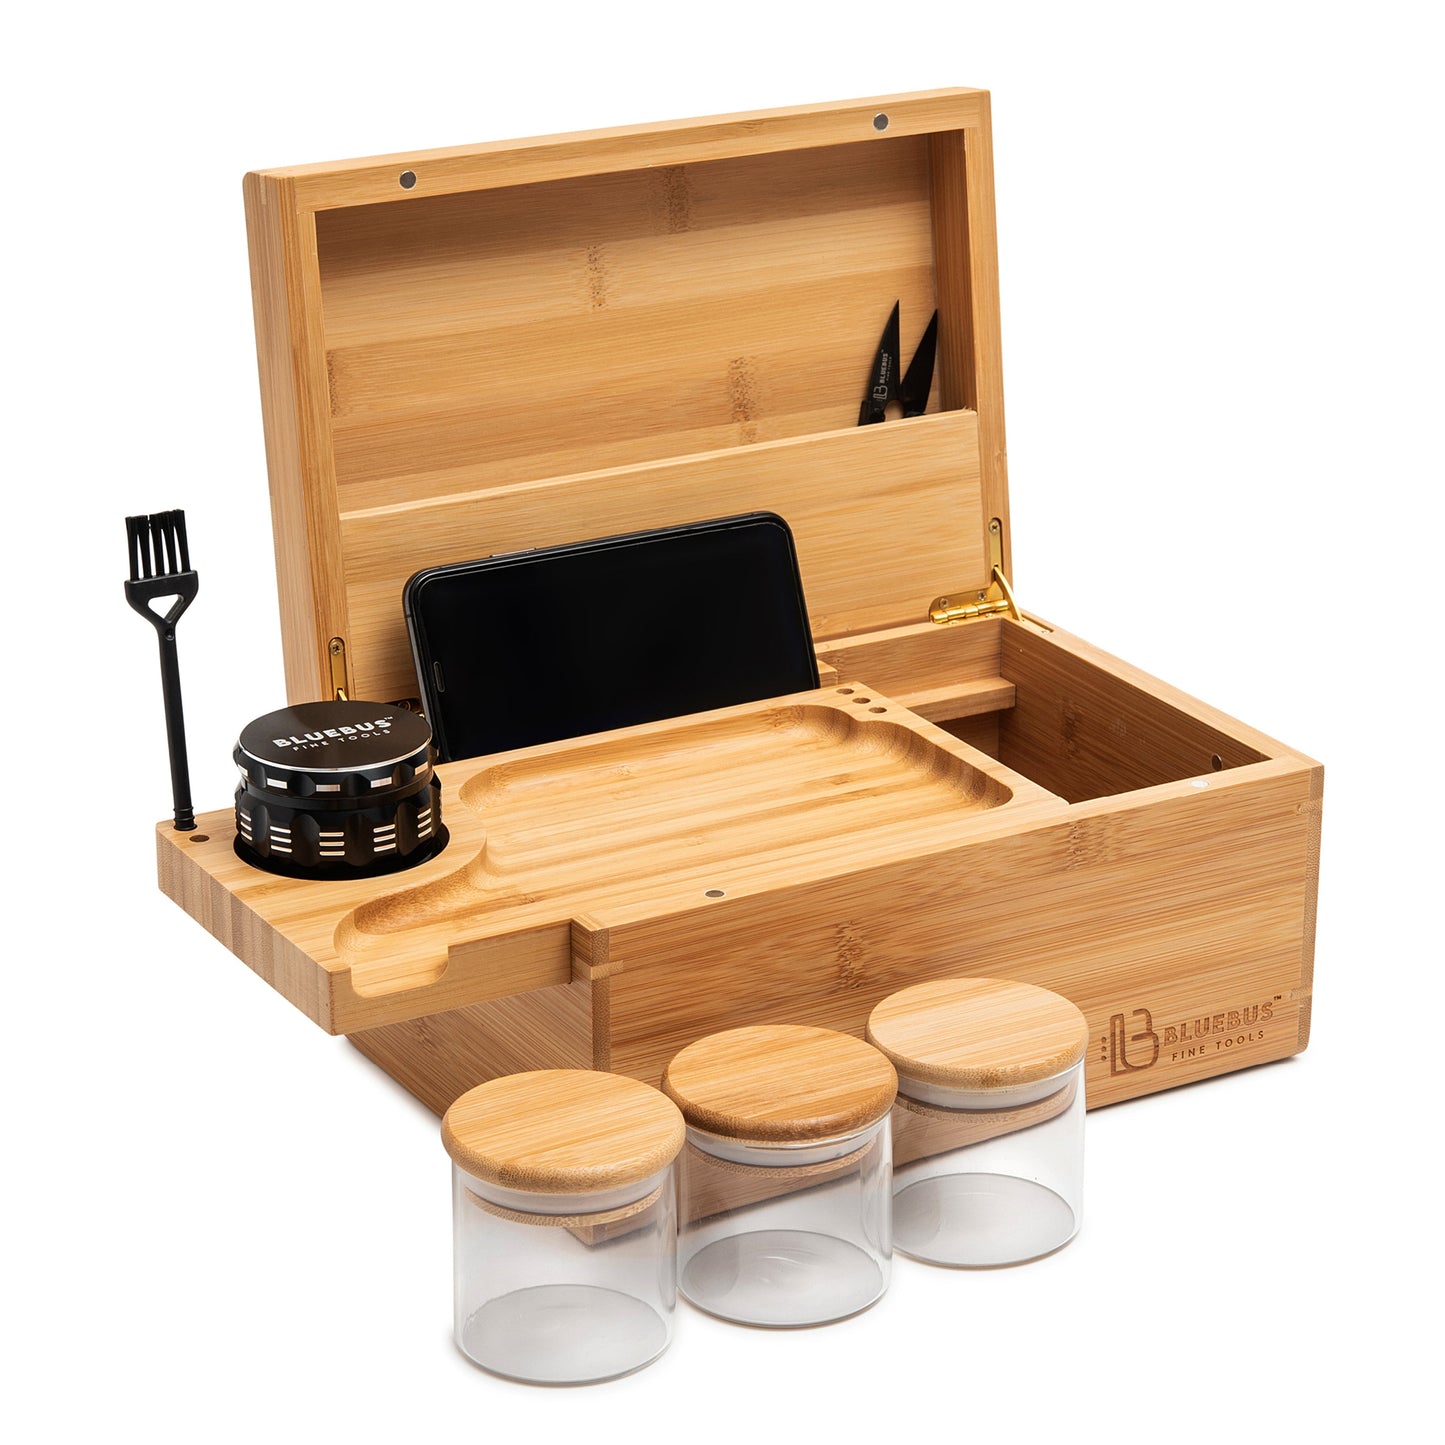 GENESIS storage Box and smoking tool kit